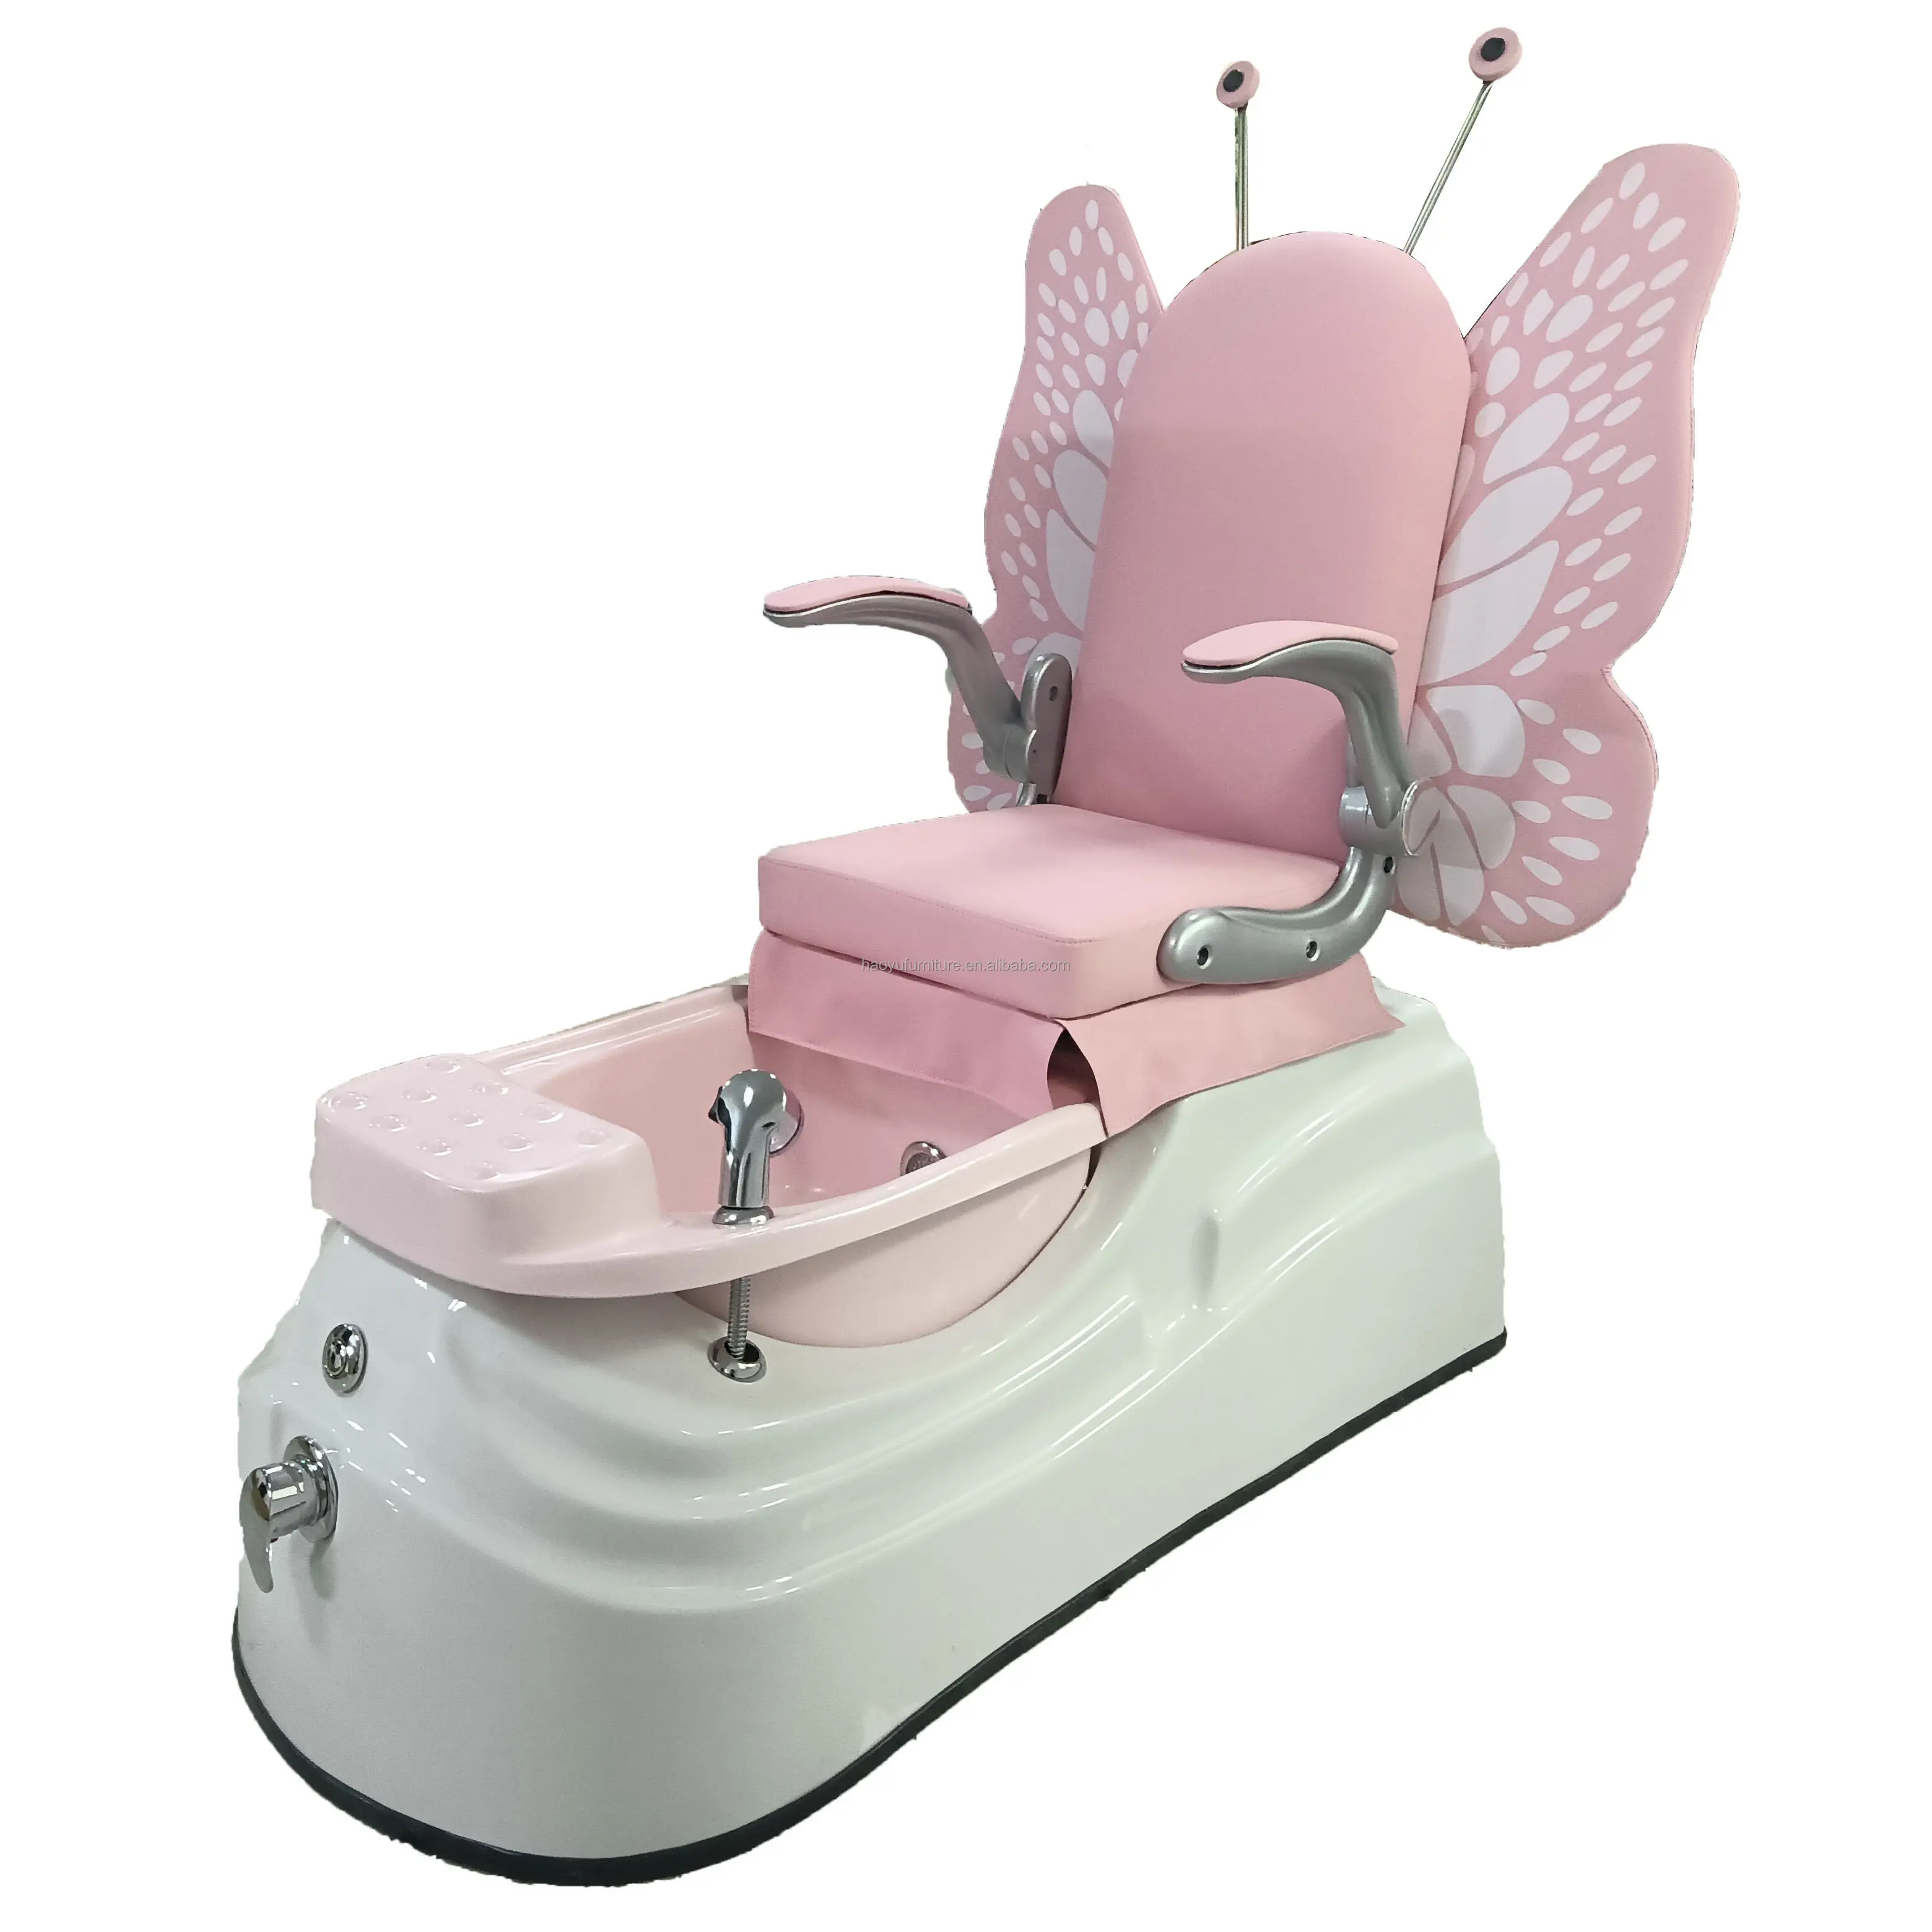 Çocuk fiberglas kase için pembe kelebek pedikür sandalyesi pedikür sandalyesi ucuz fiyat pedikür sandalyesi spa